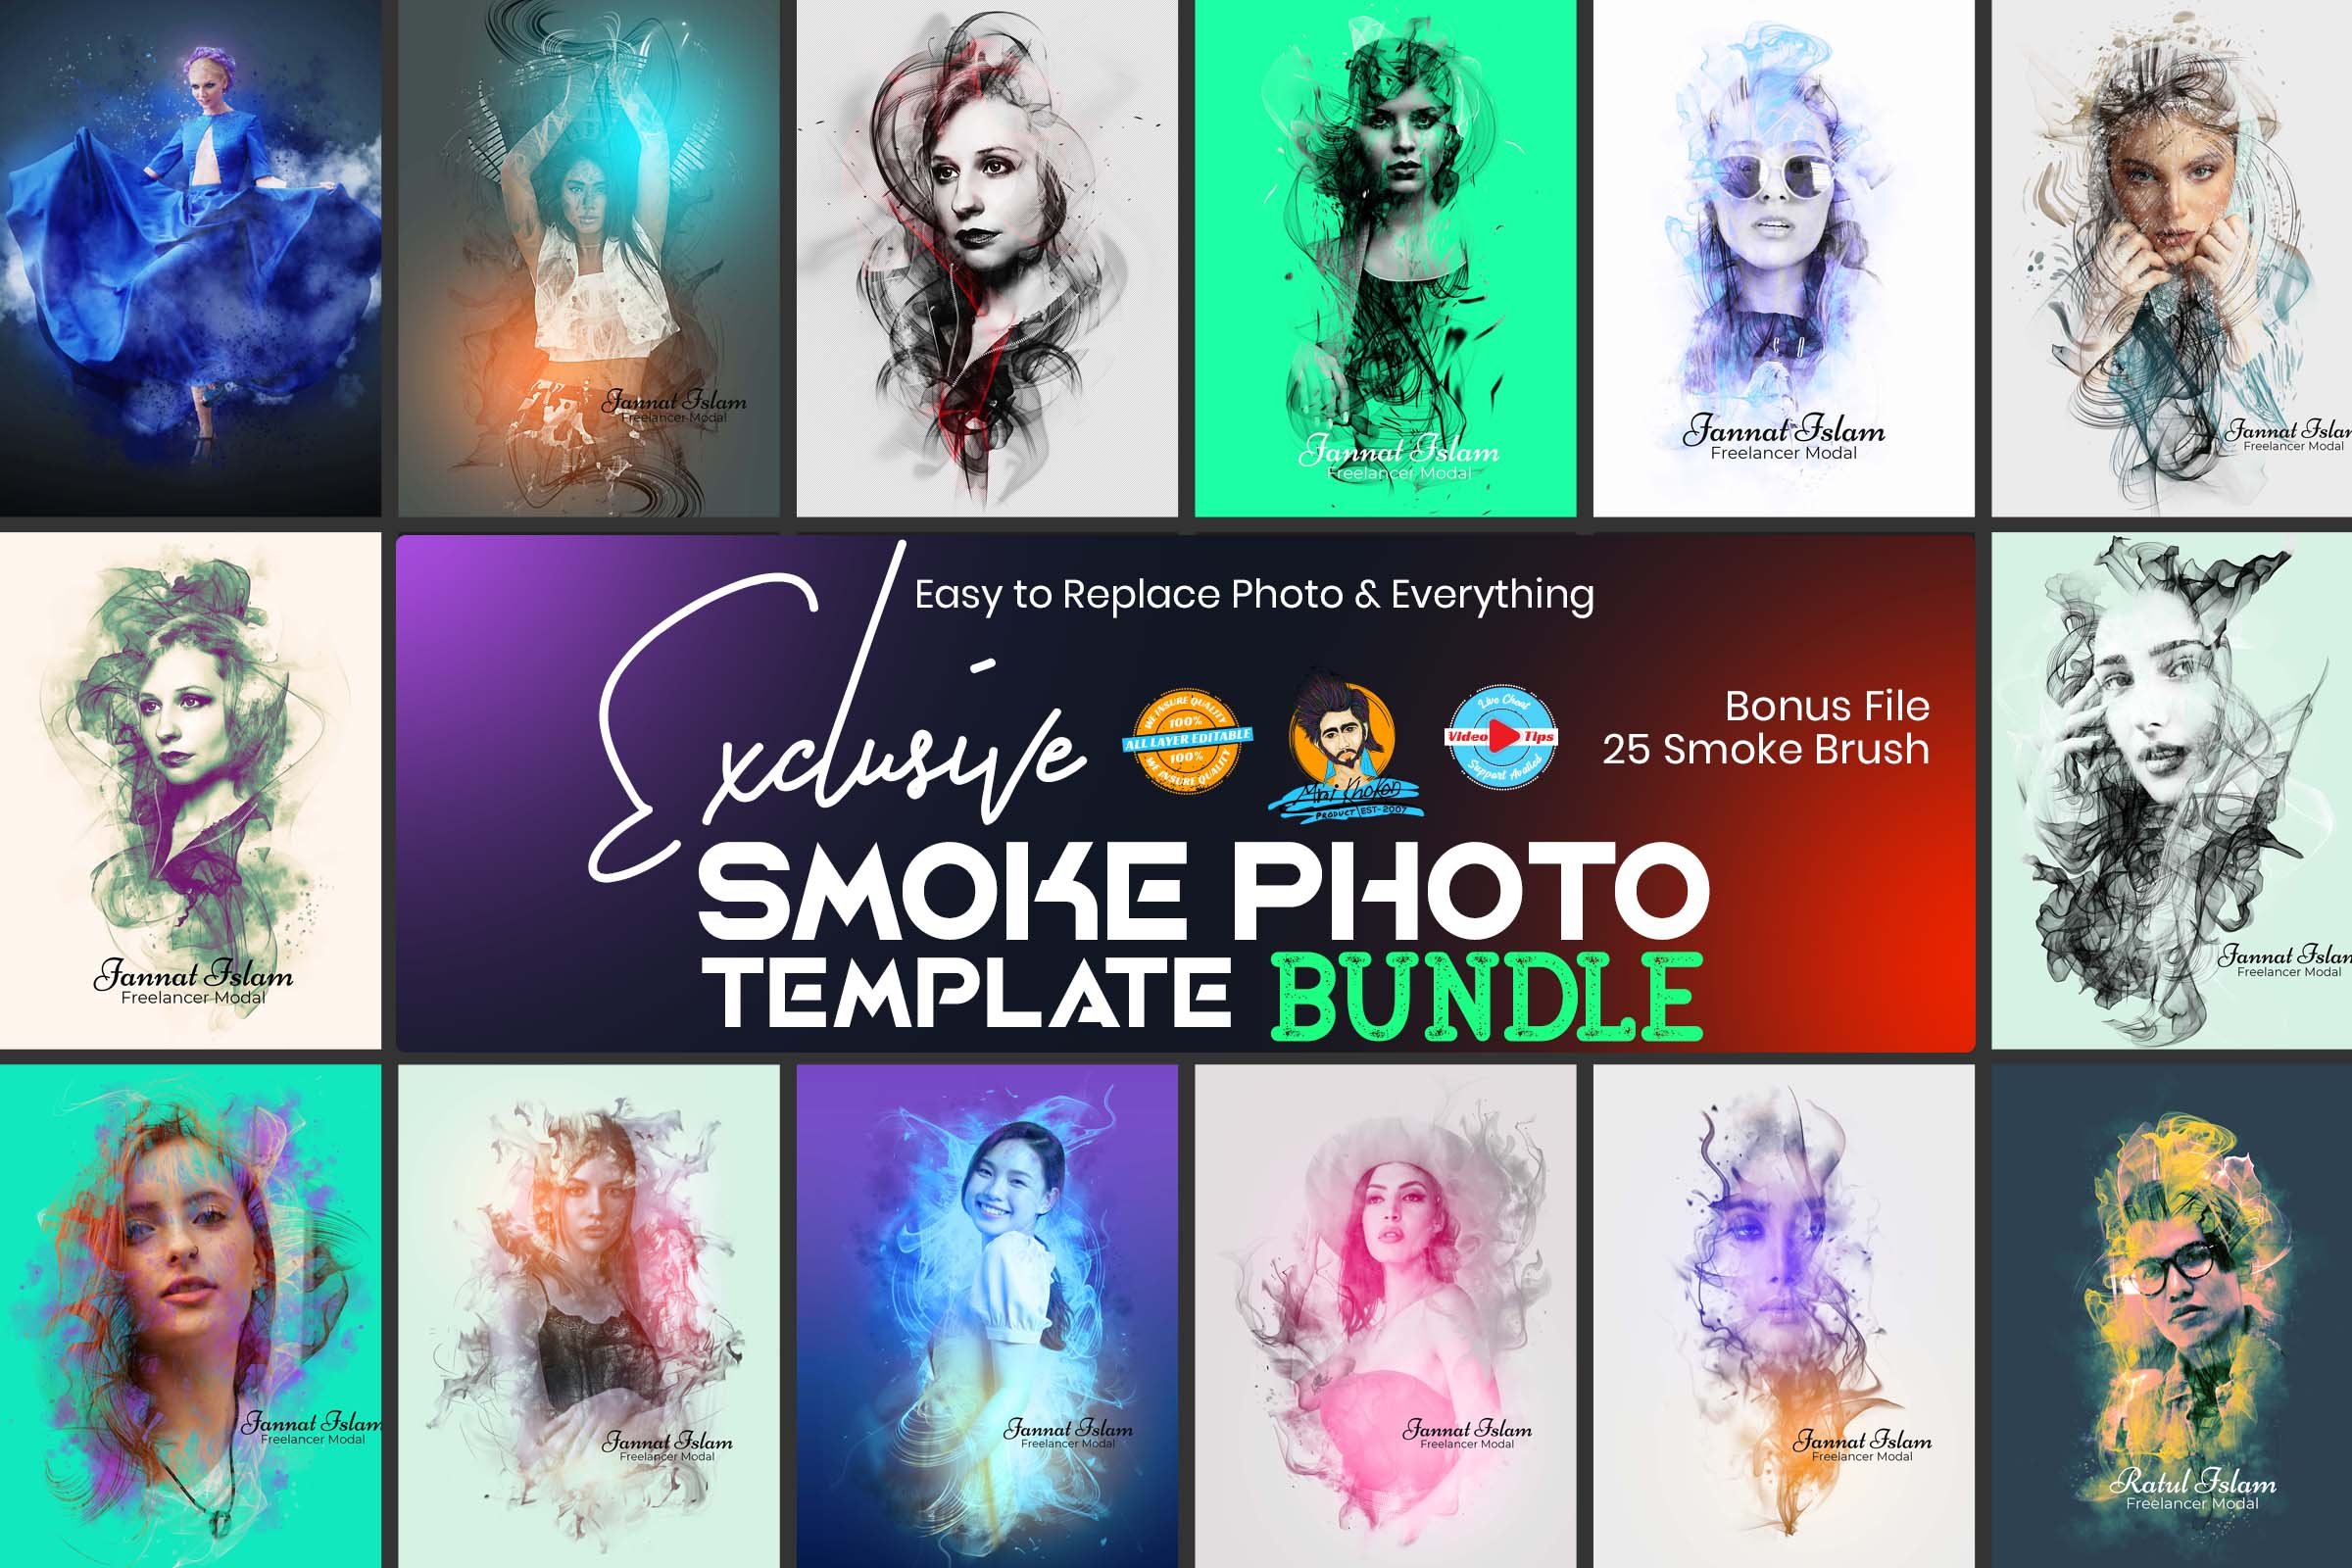 Exclusive Smoke Photo Effect Bundlecover image.